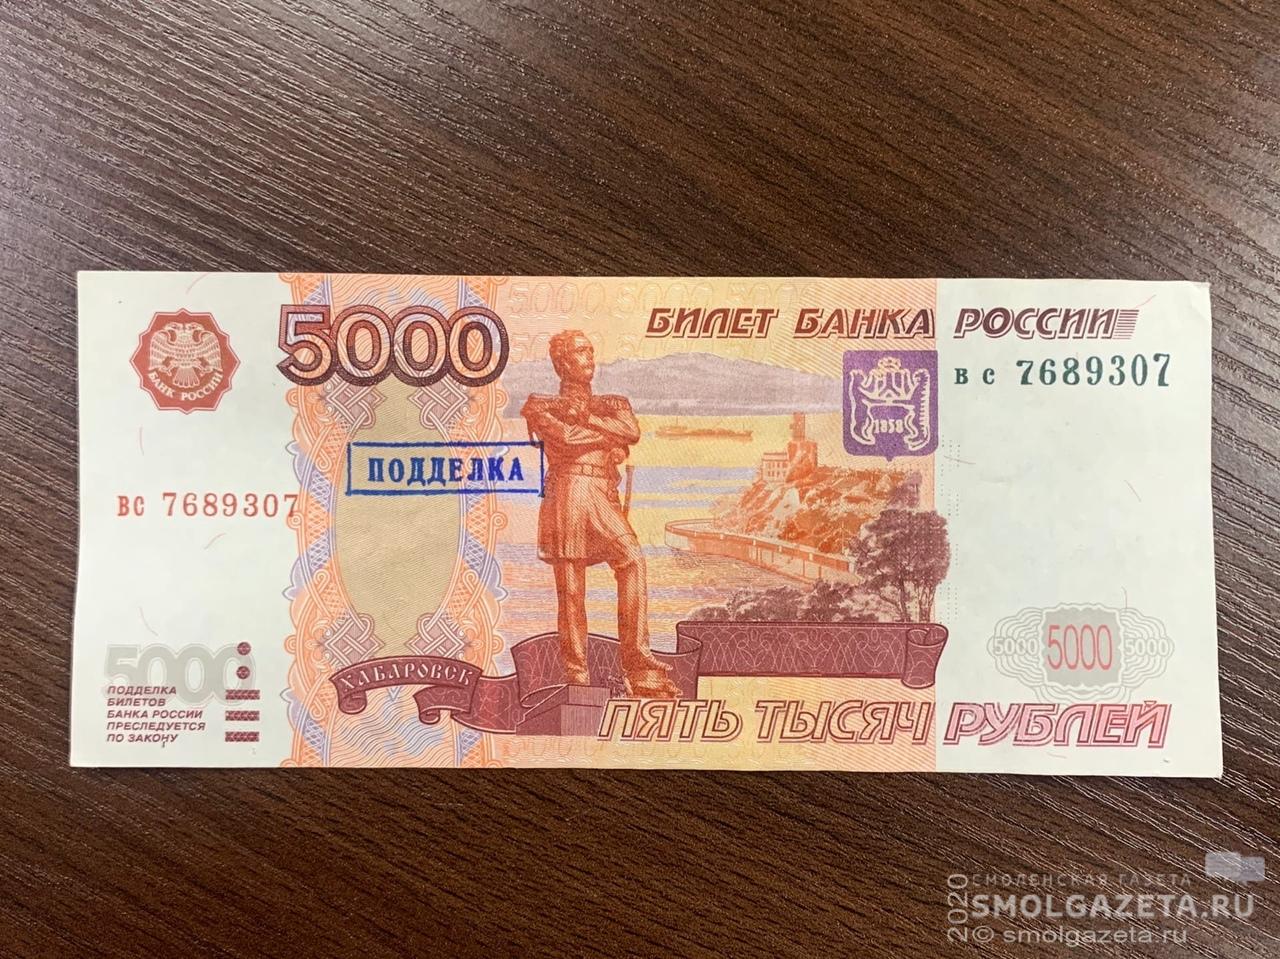 В банке Смоленска нашли поддельные деньги